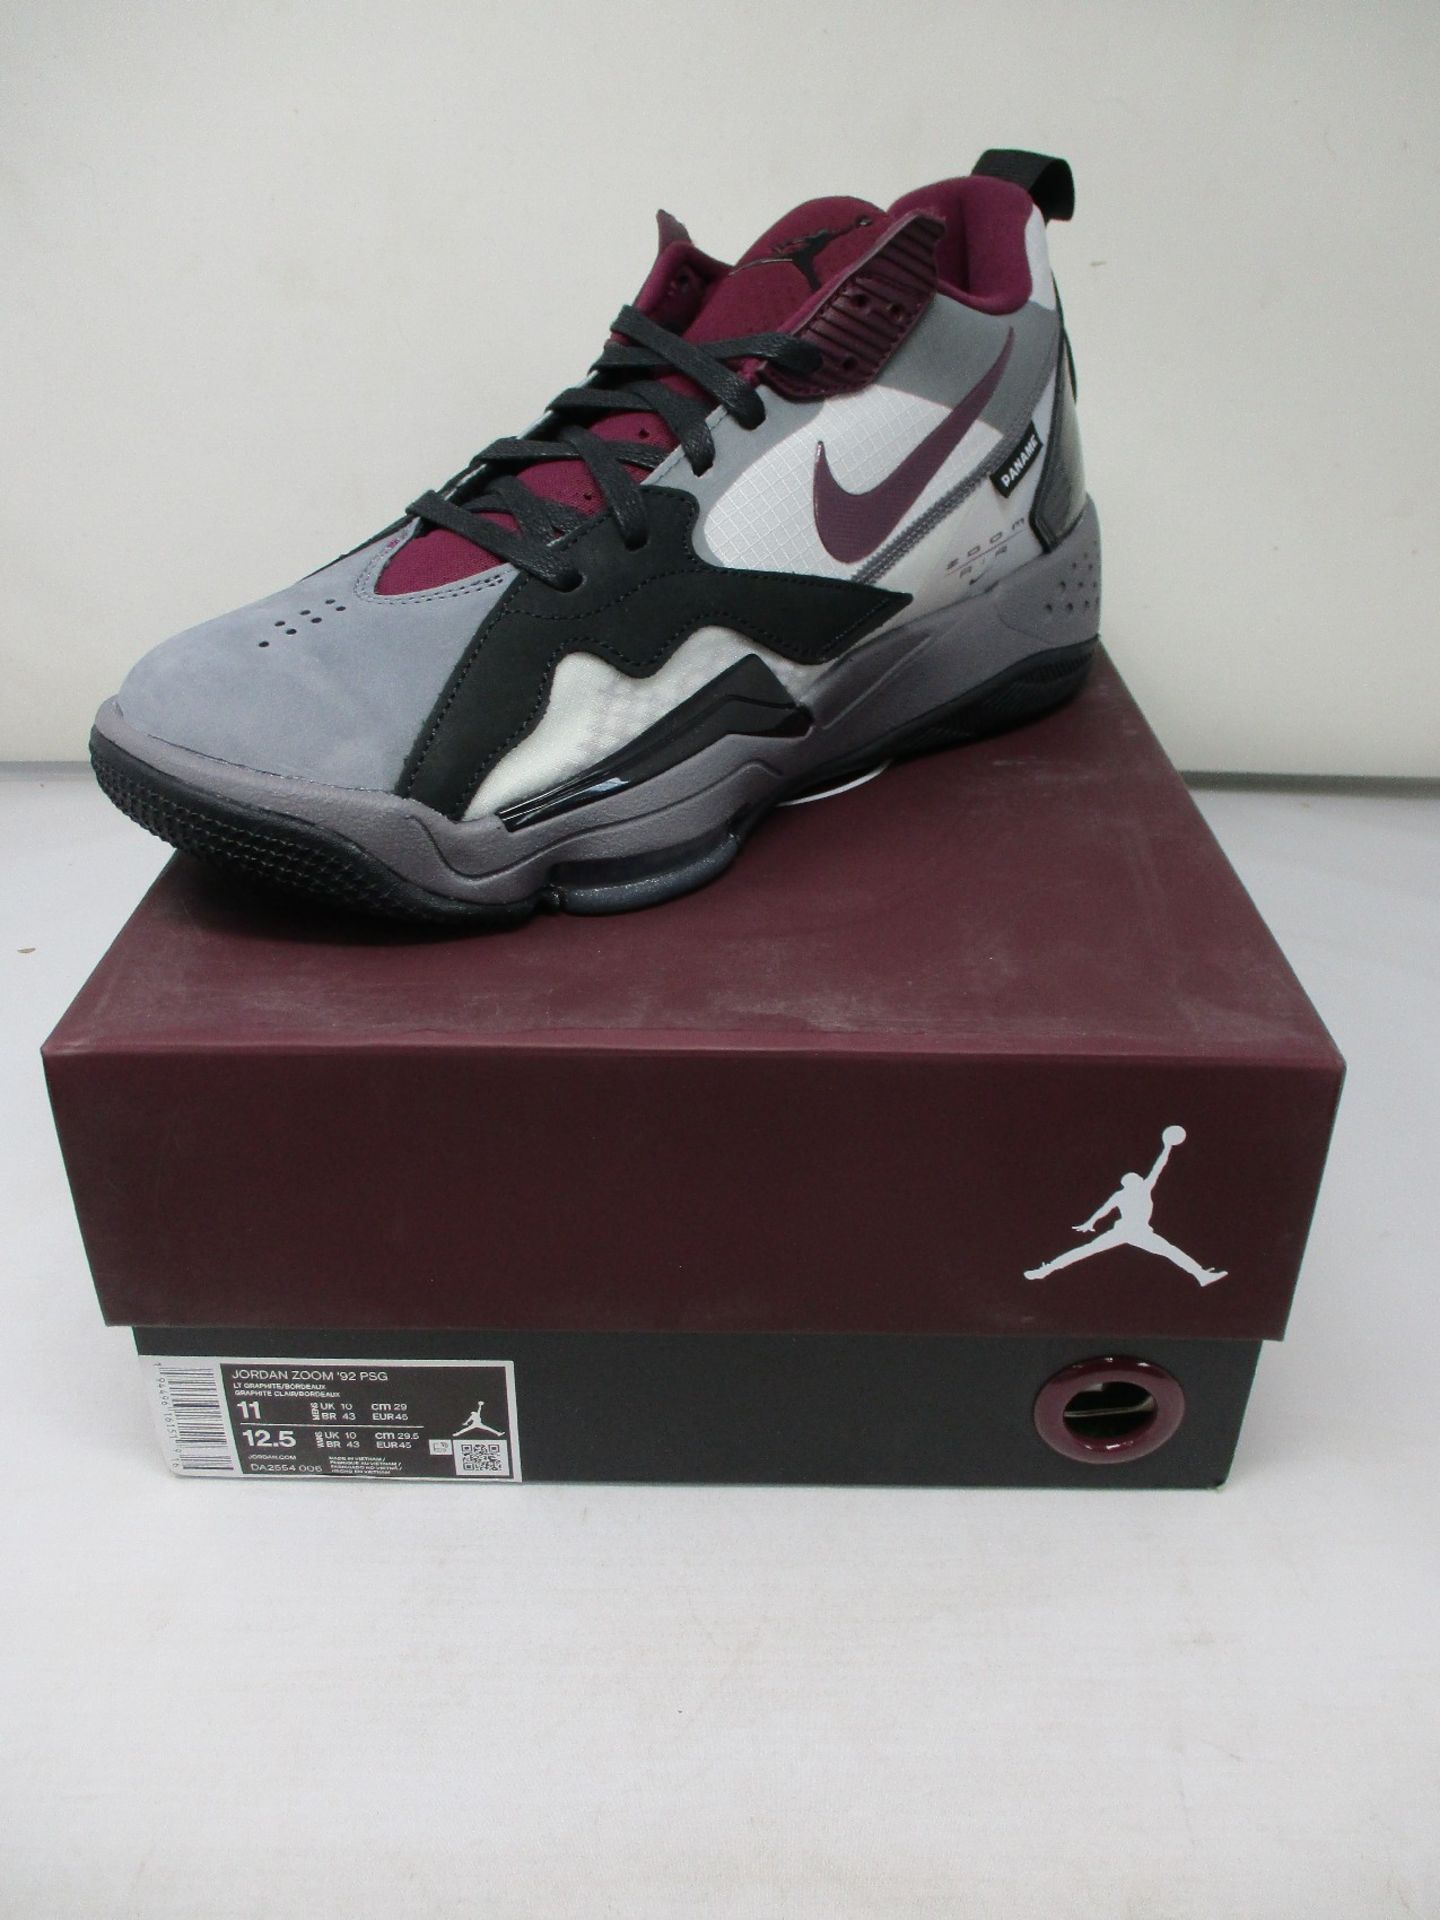 A pair of as new Nike Jordan Zoom '92 PSG (UK 10).